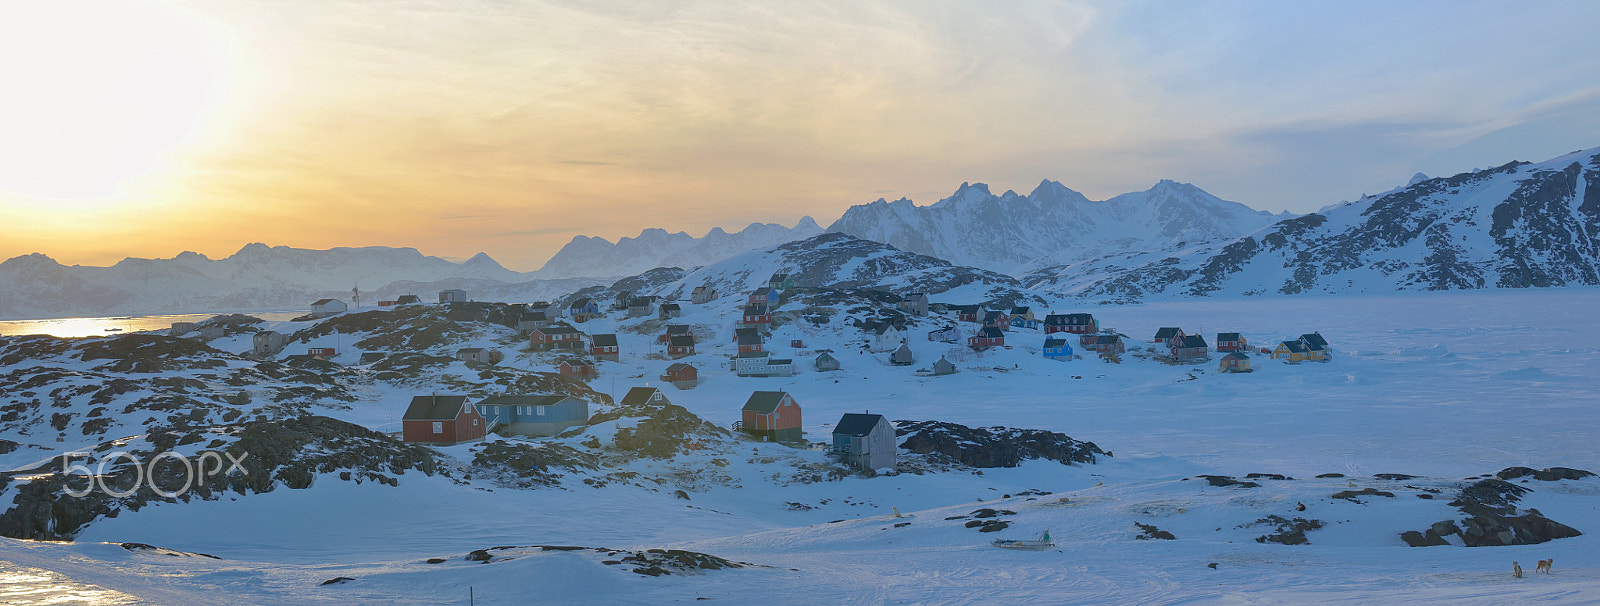 AF Zoom-Nikkor 80-200mm f/4.5-5.6D sample photo. Greenland landscape  in spring time photography